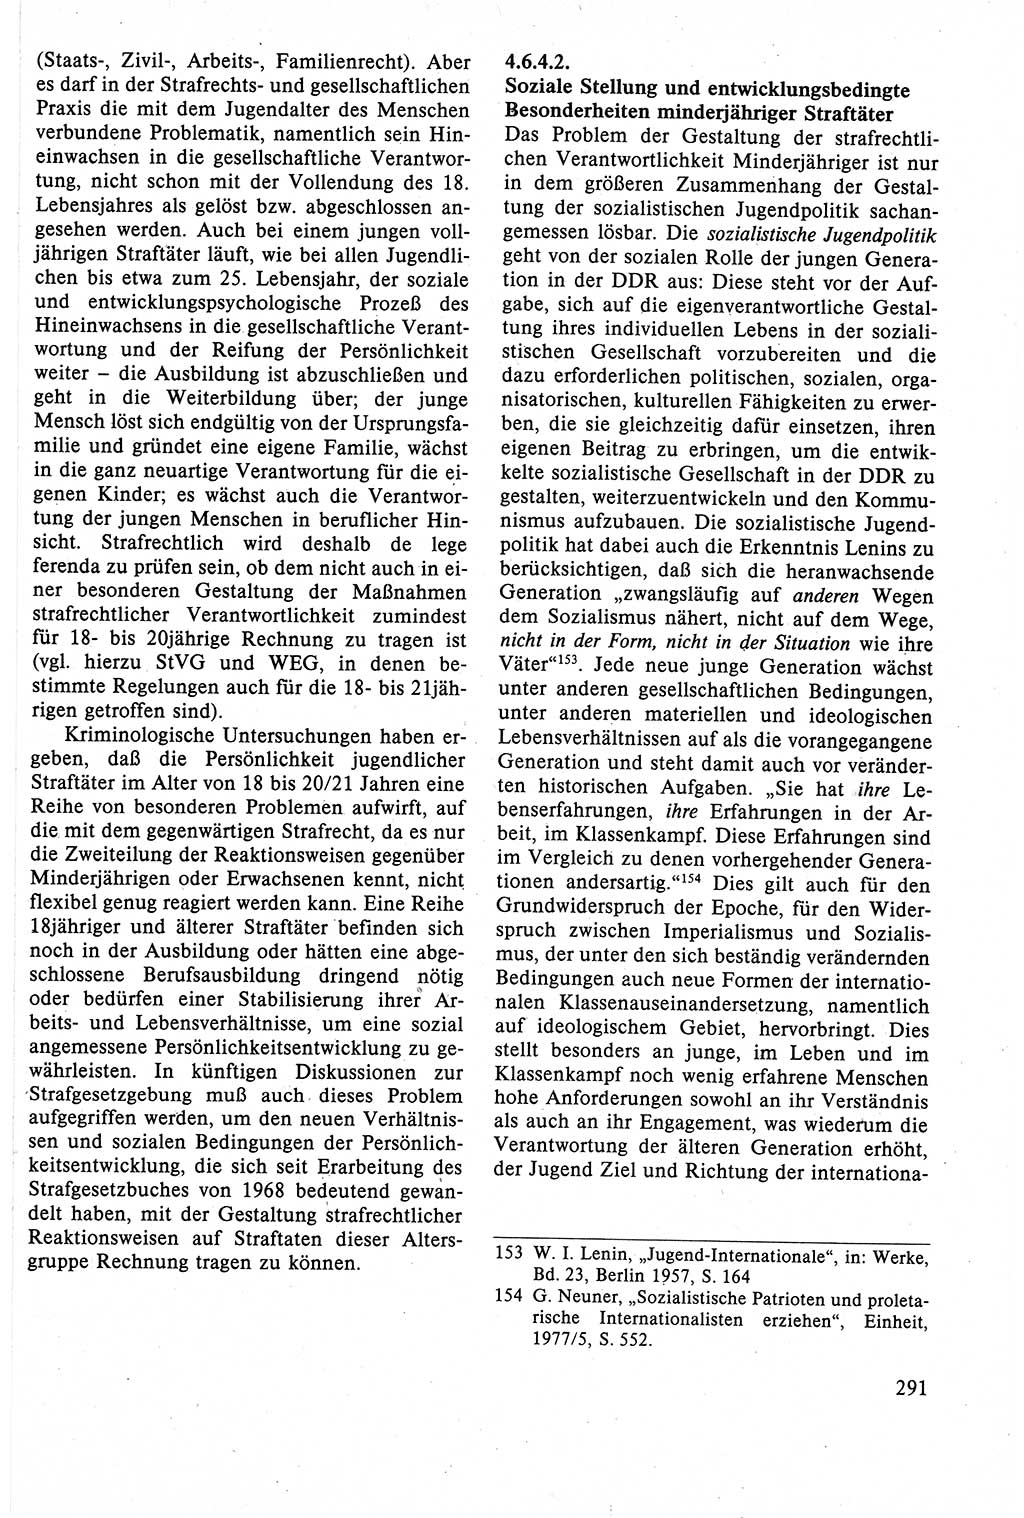 Strafrecht der DDR (Deutsche Demokratische Republik), Lehrbuch 1988, Seite 291 (Strafr. DDR Lb. 1988, S. 291)